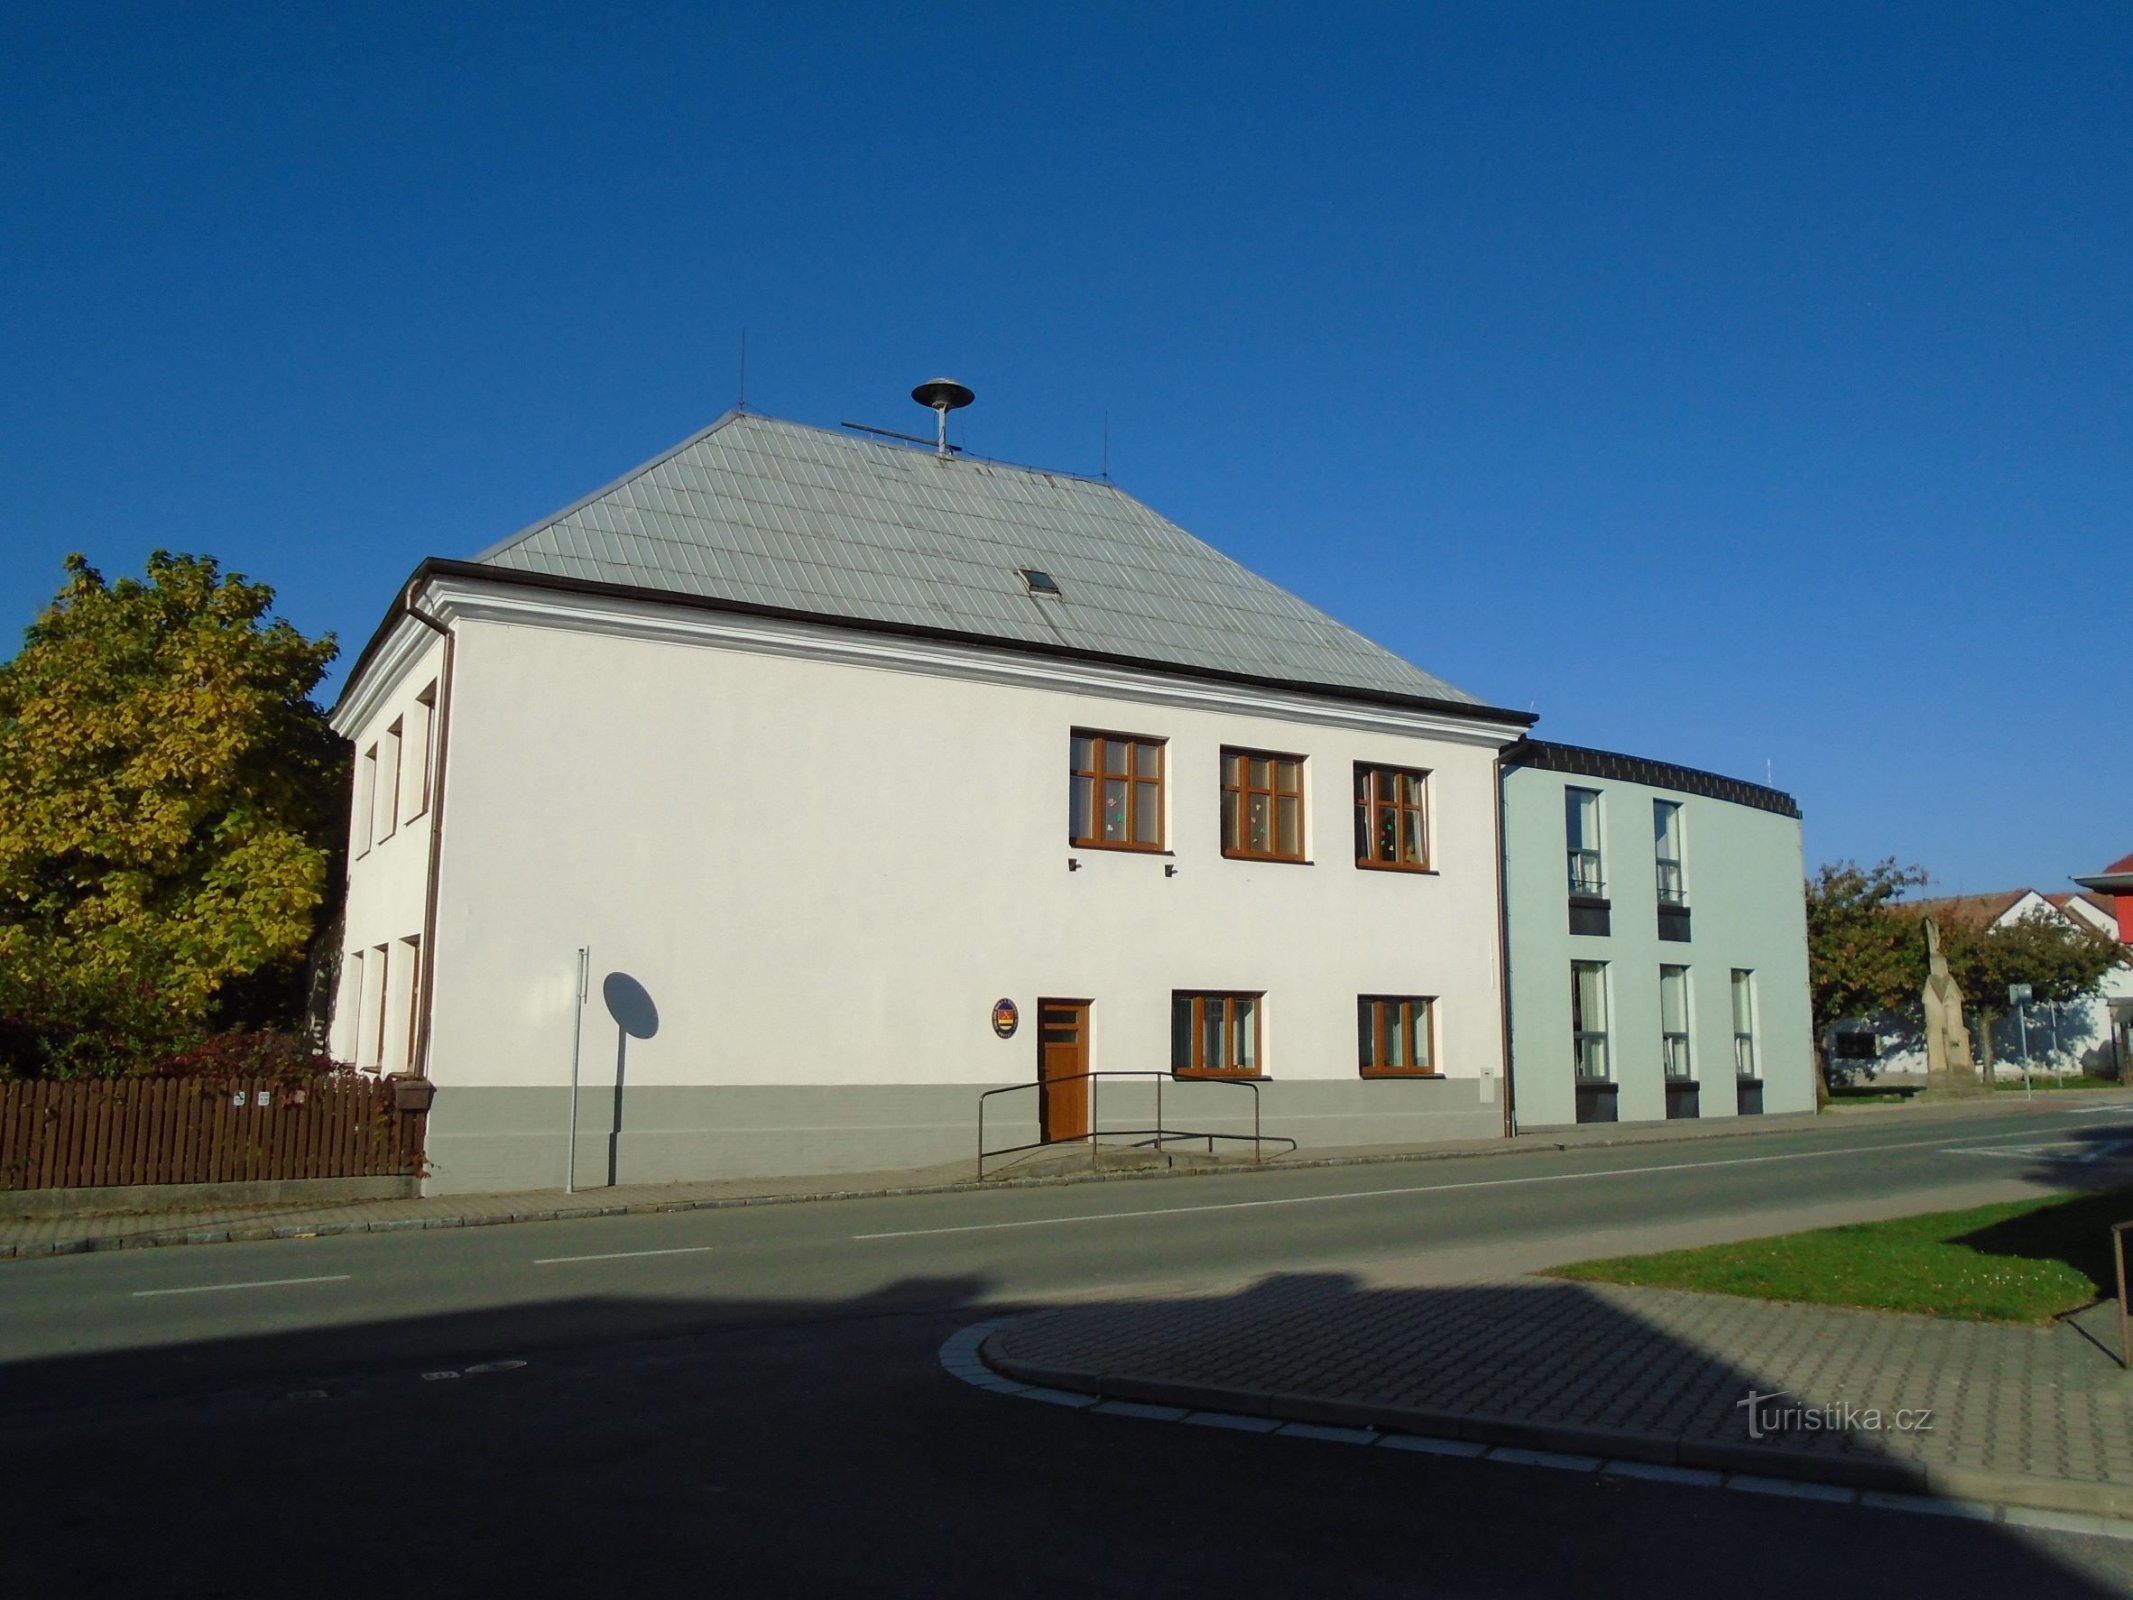 Școală (Dríteč, 16.10.2017)